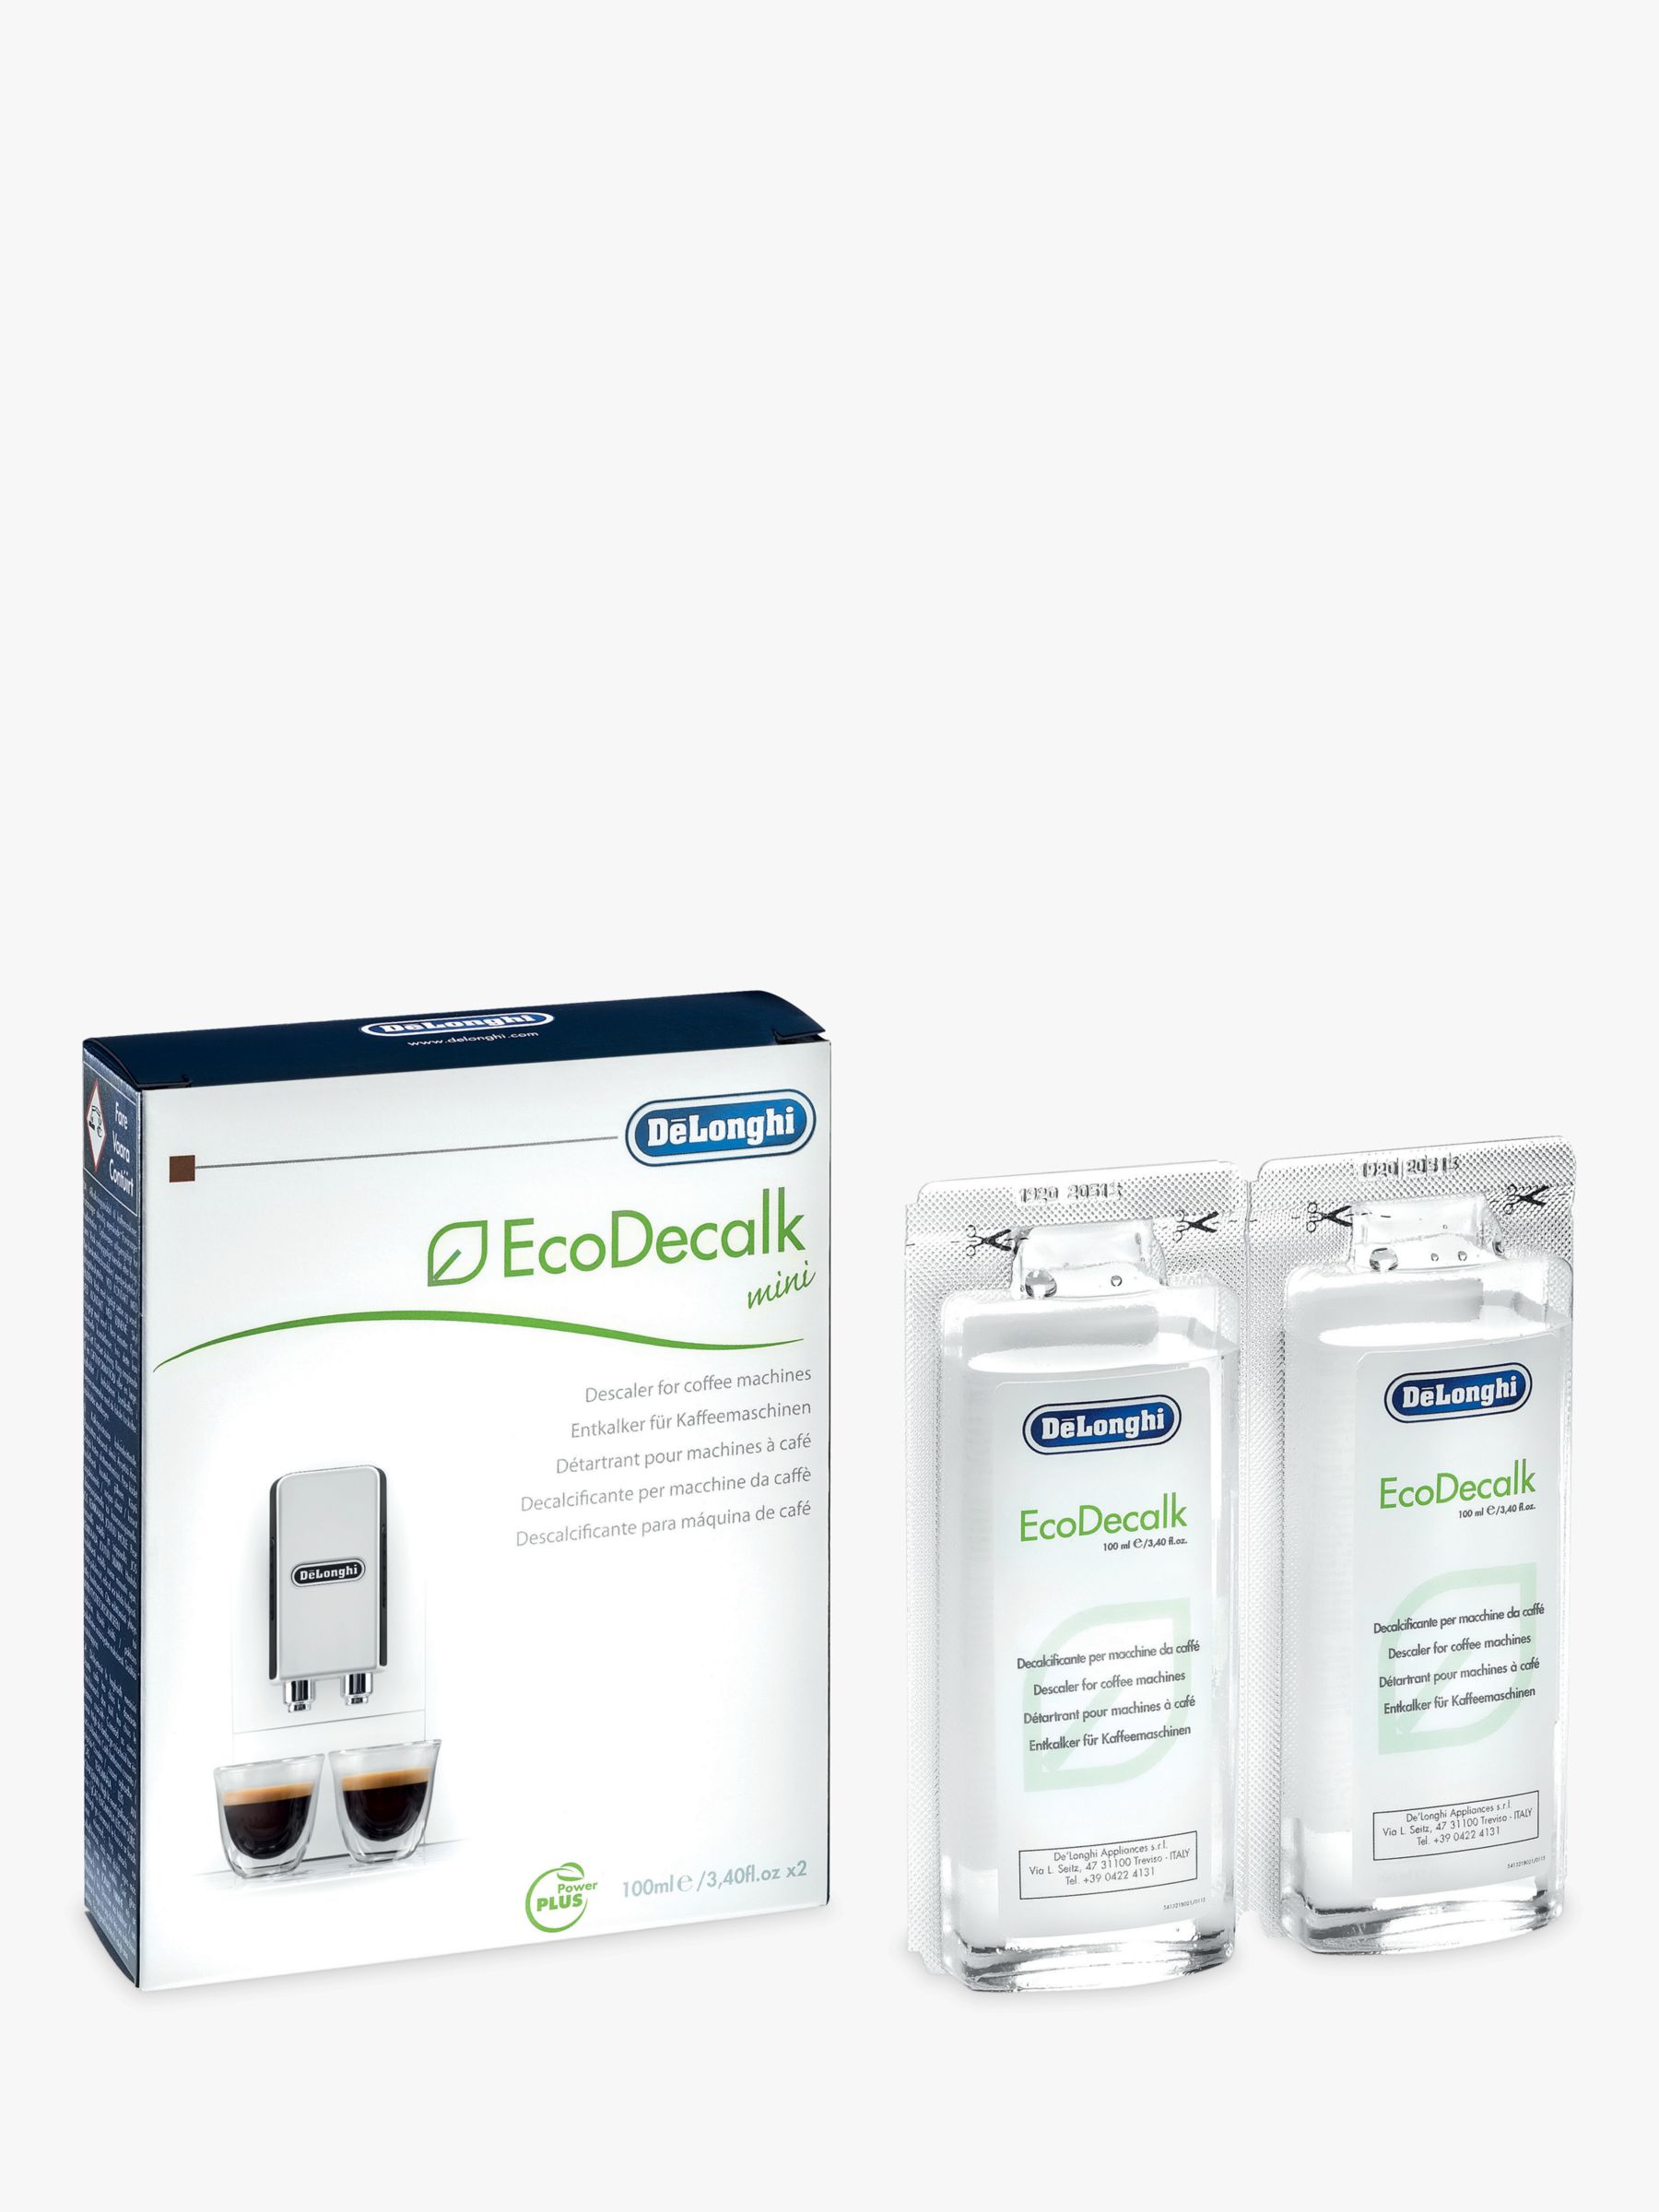 OXID eShop 6, Delonghi descaler EcoDecalk mini 2x100ml